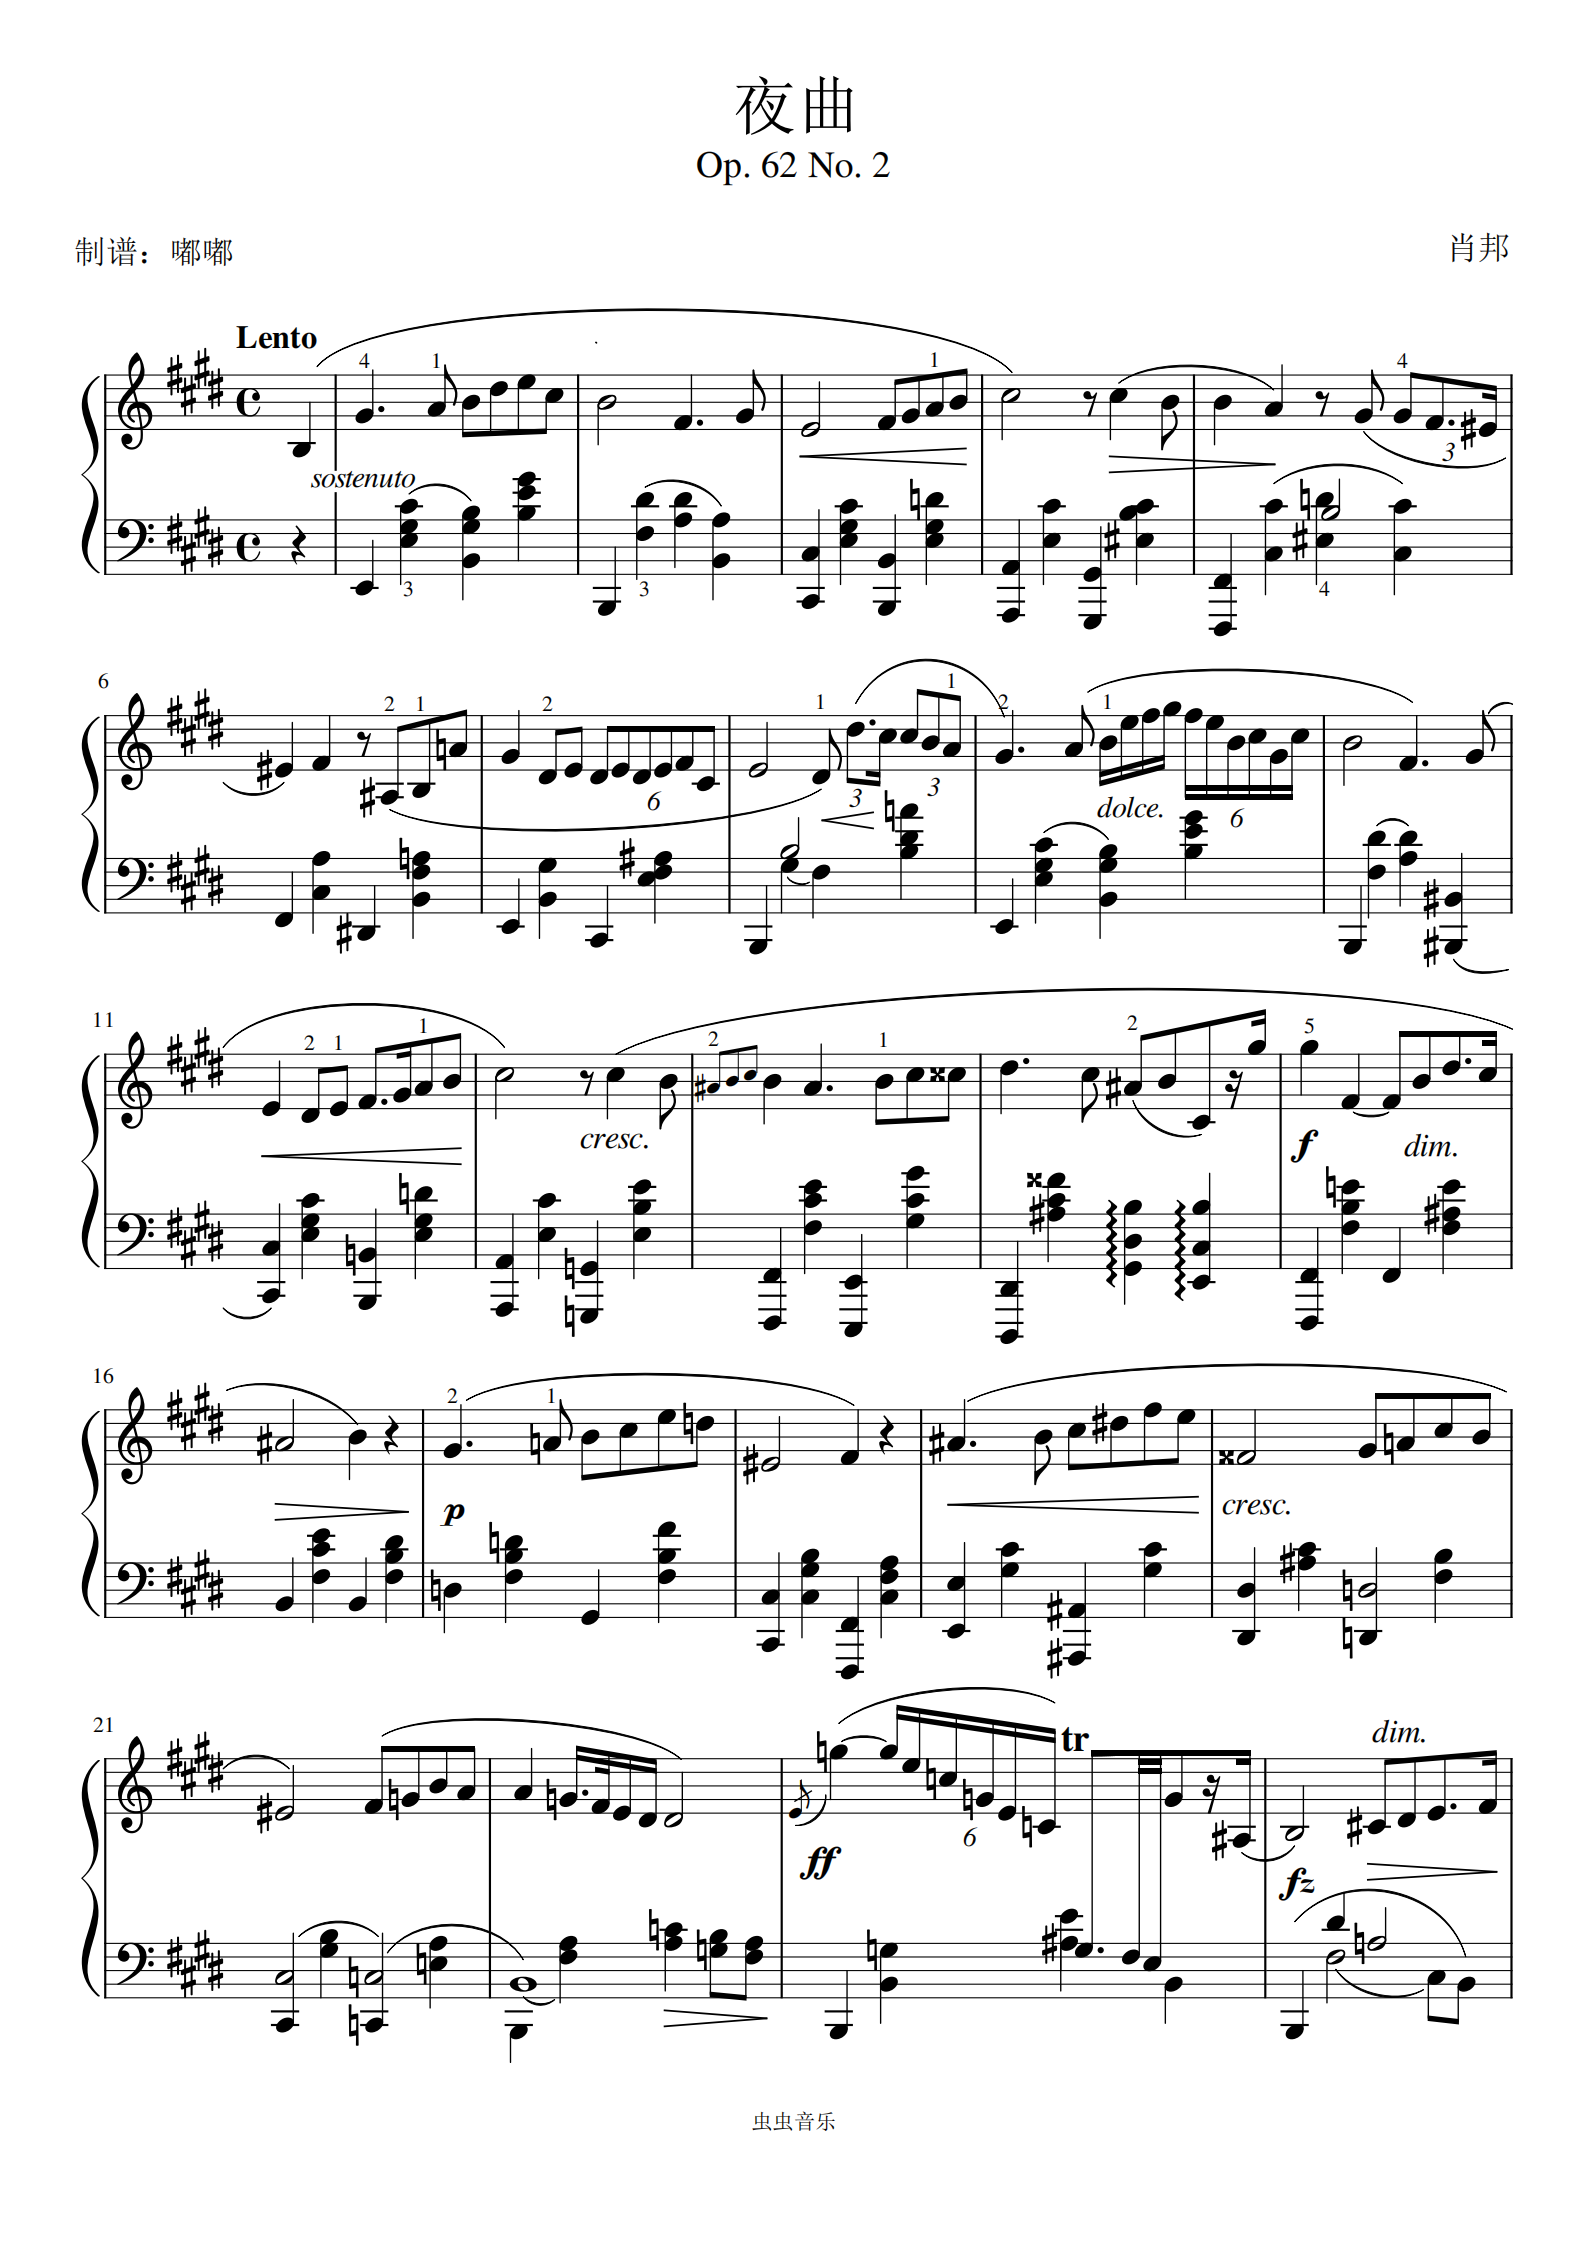 肖邦《夜曲》op 62 no 2(带指法)钢琴谱